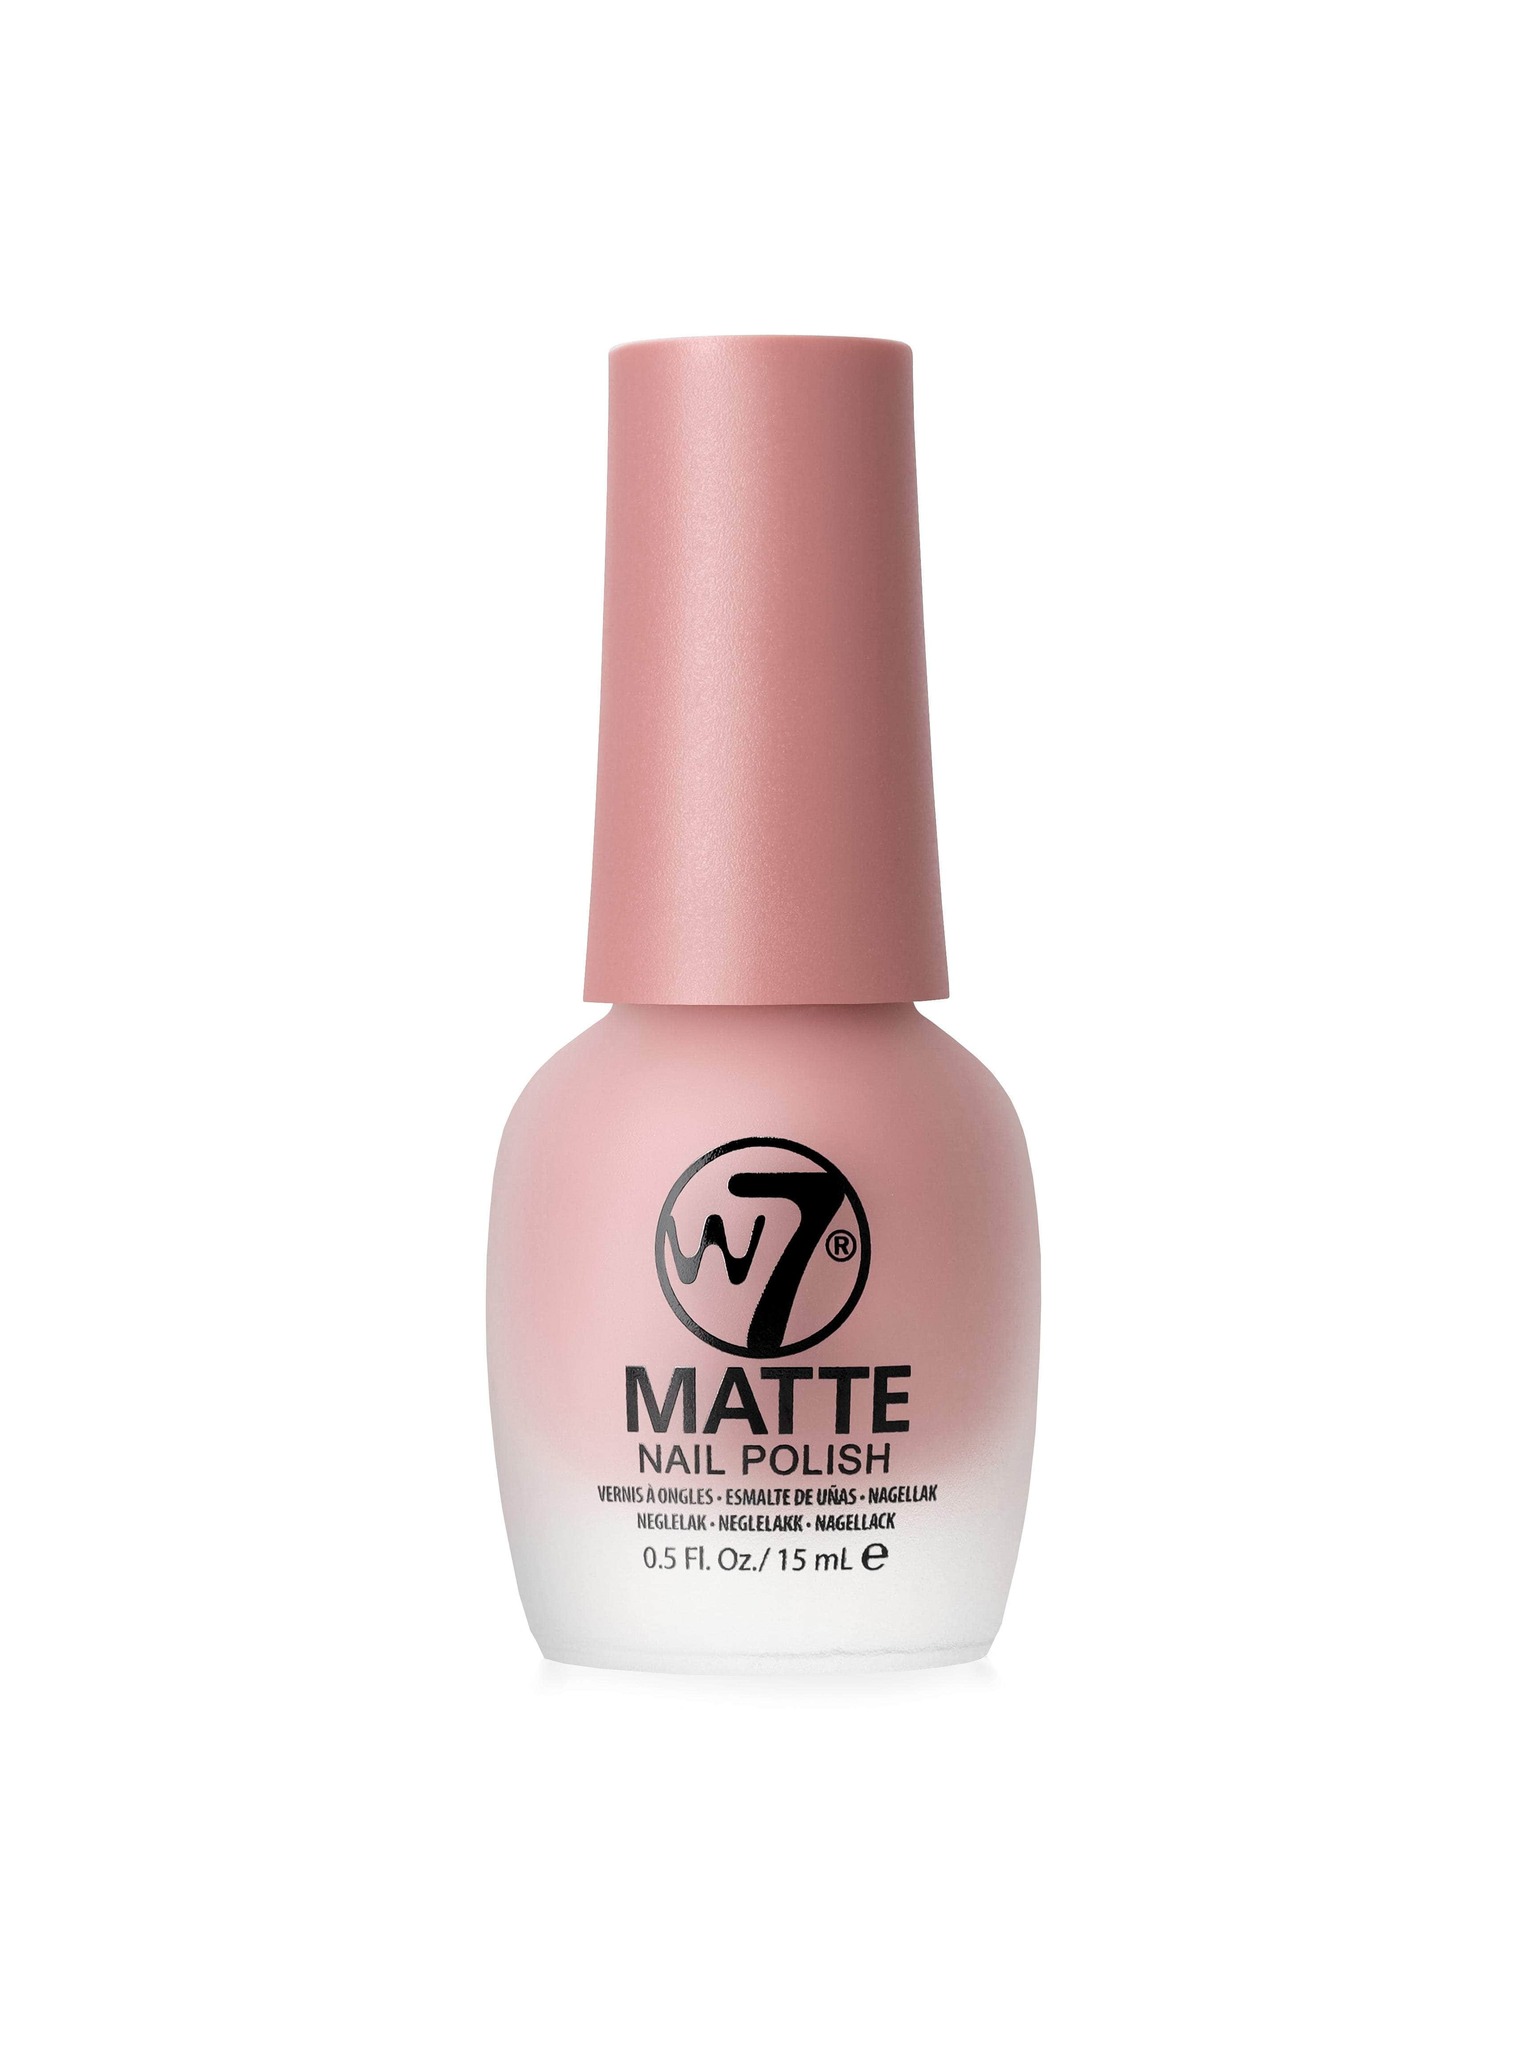 W7 Nail Polish Matte - Smitten